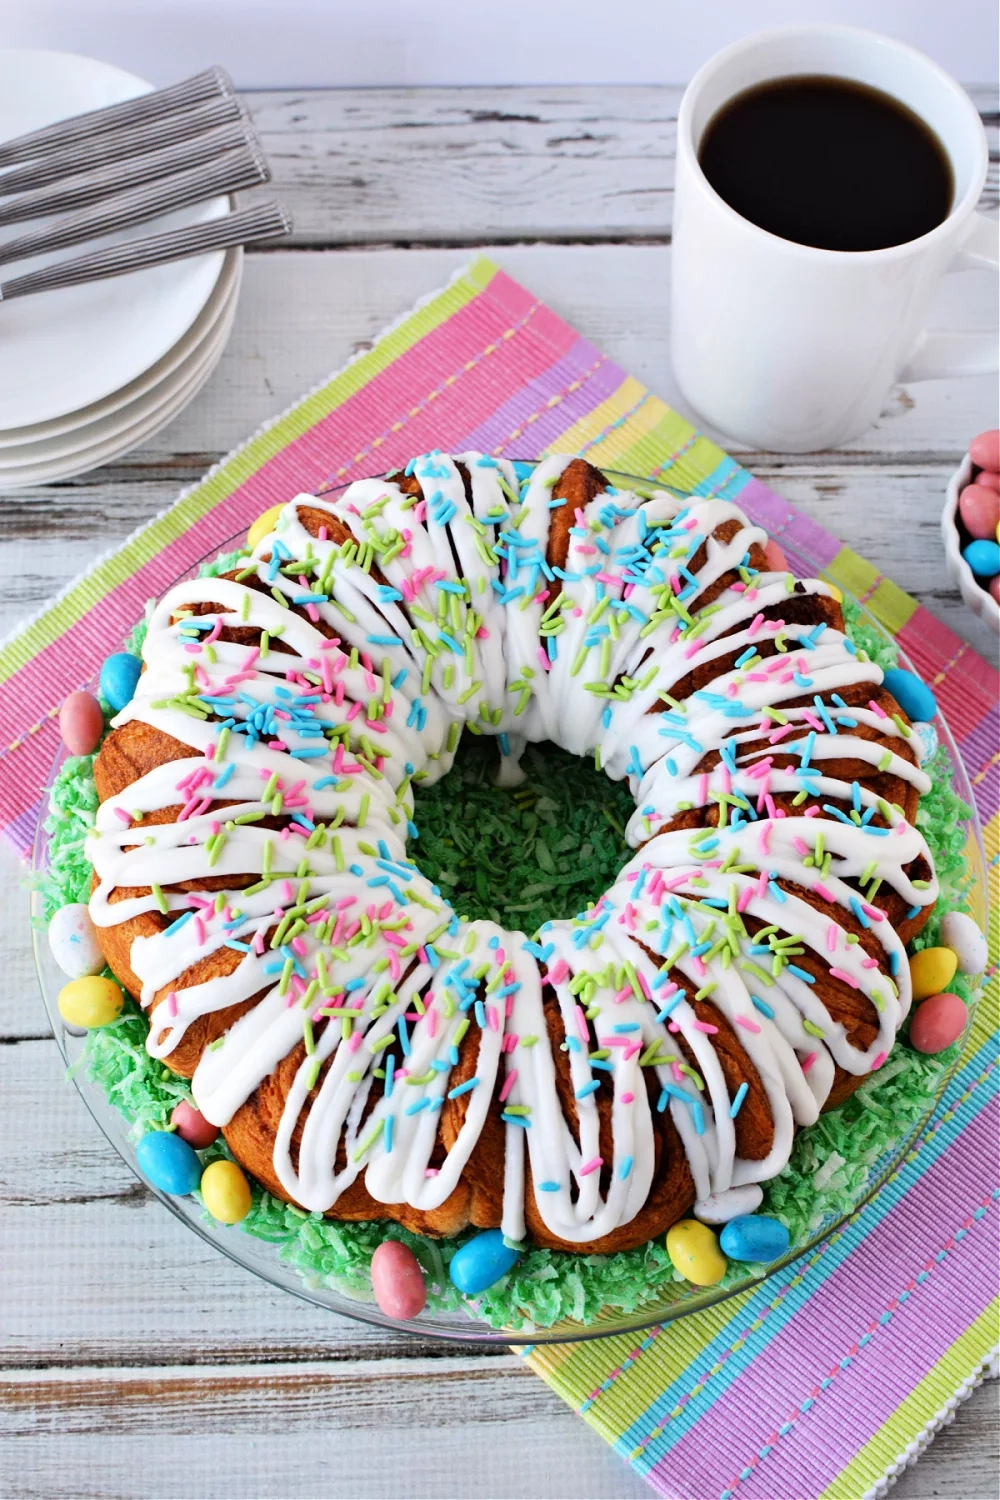 Make this Cinnamon Roll Bundt Cake for Easter Brunch!